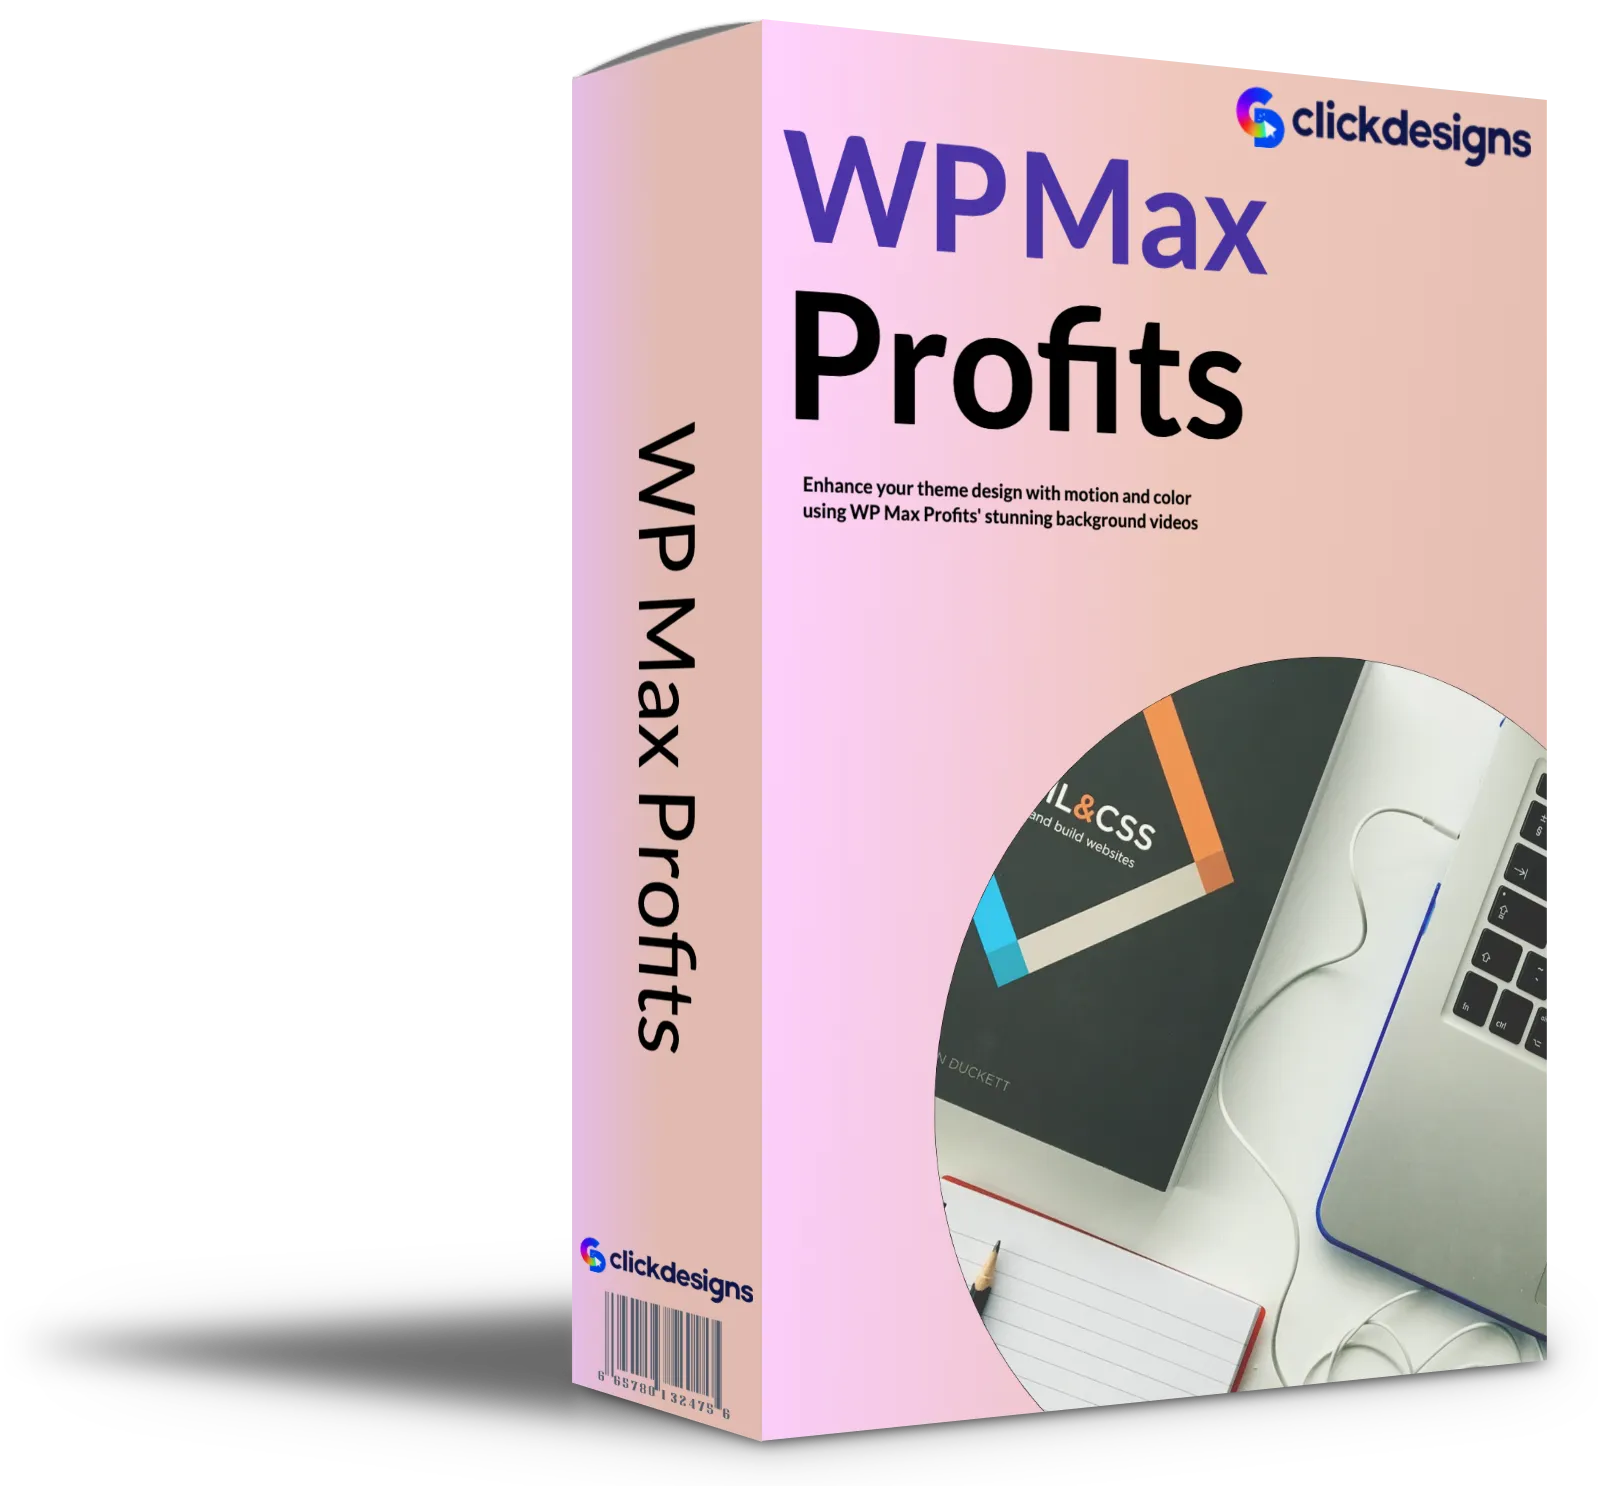 WP Max Profits